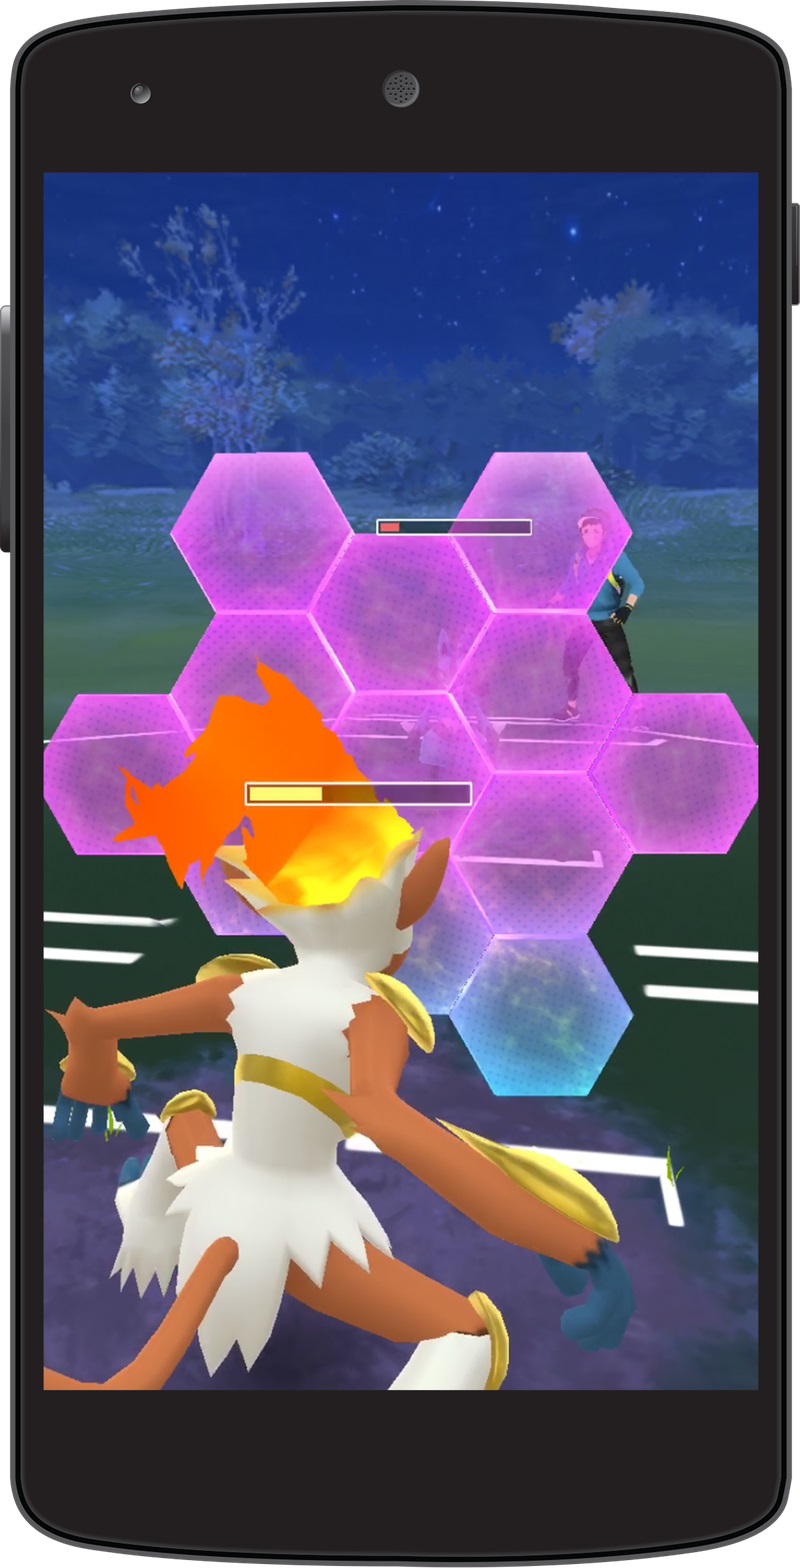 Chế độ PvP của Pokemon GO sắp ra mắt sẽ có những gì?